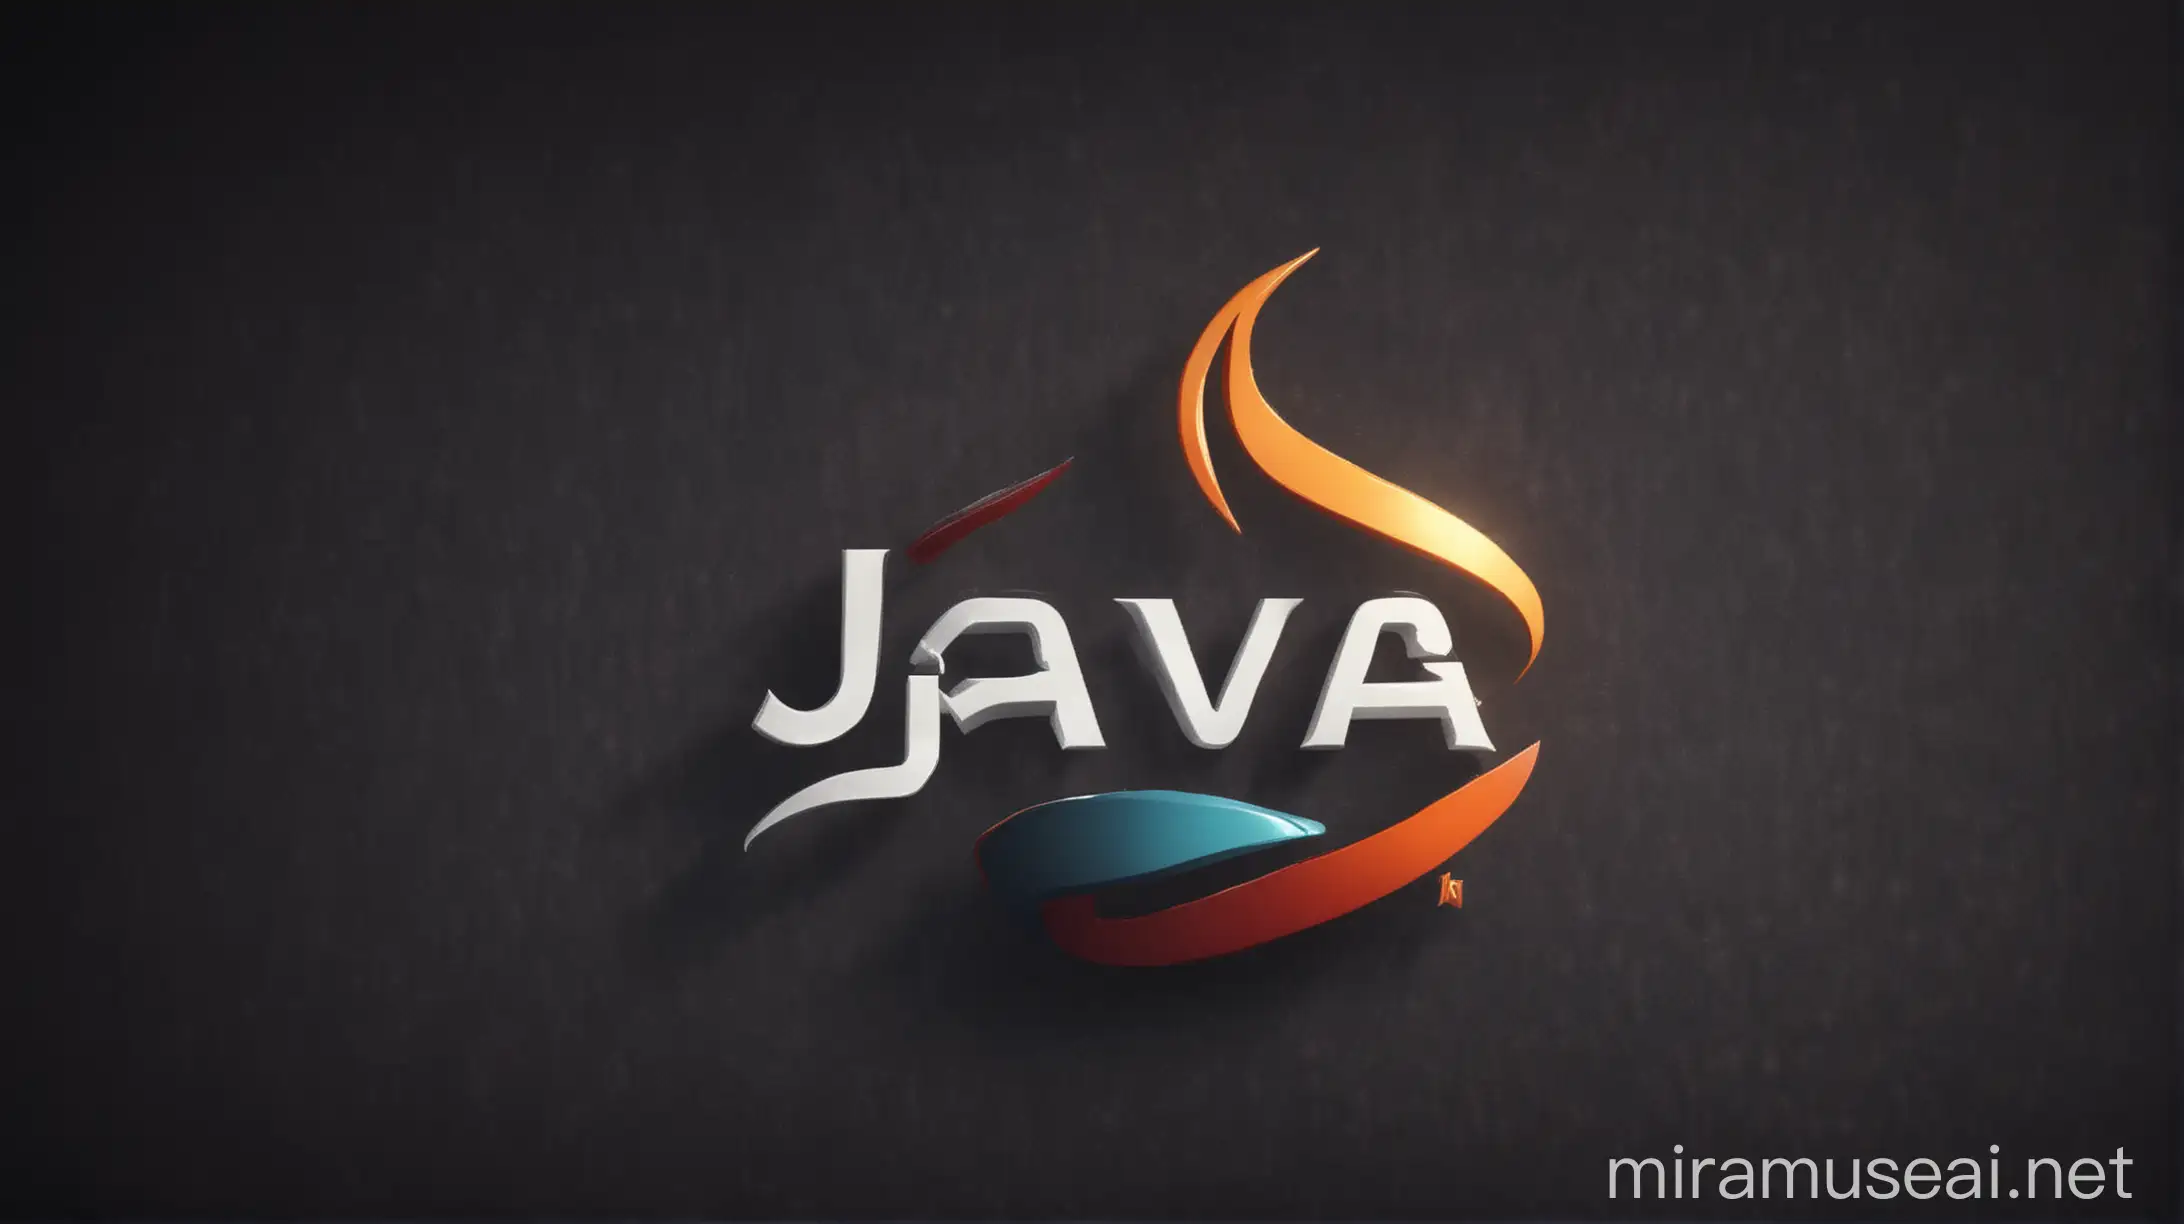 Java Programming Language Logo in 4K Resolution